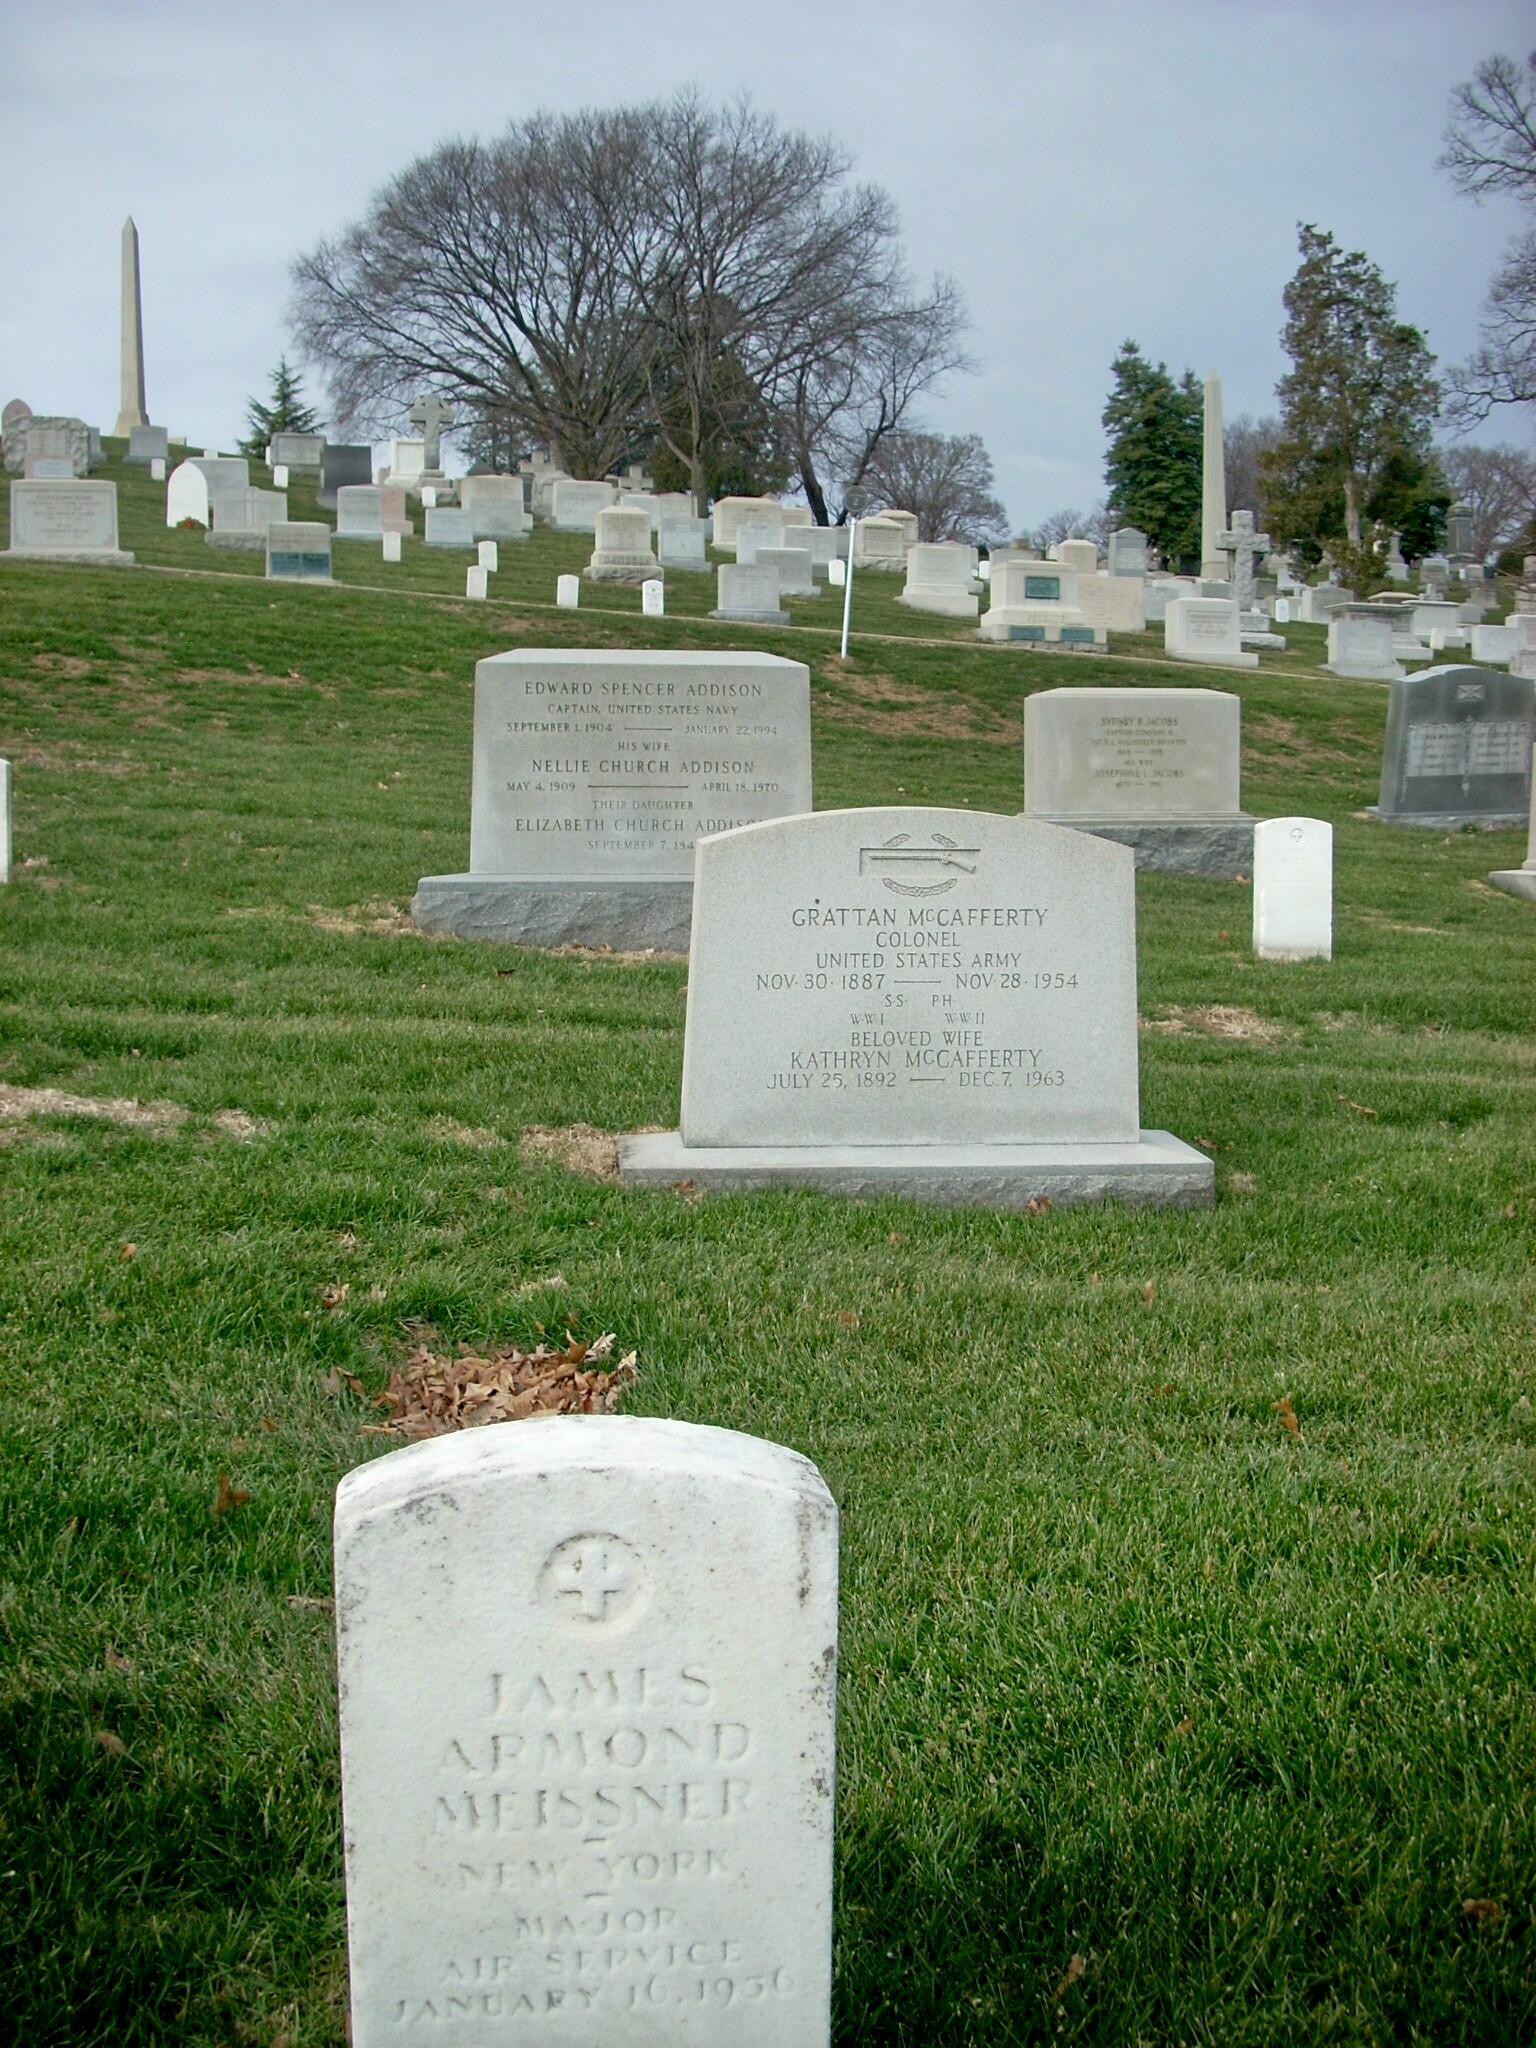 jameissner-gravesite-photo-january-2009-006